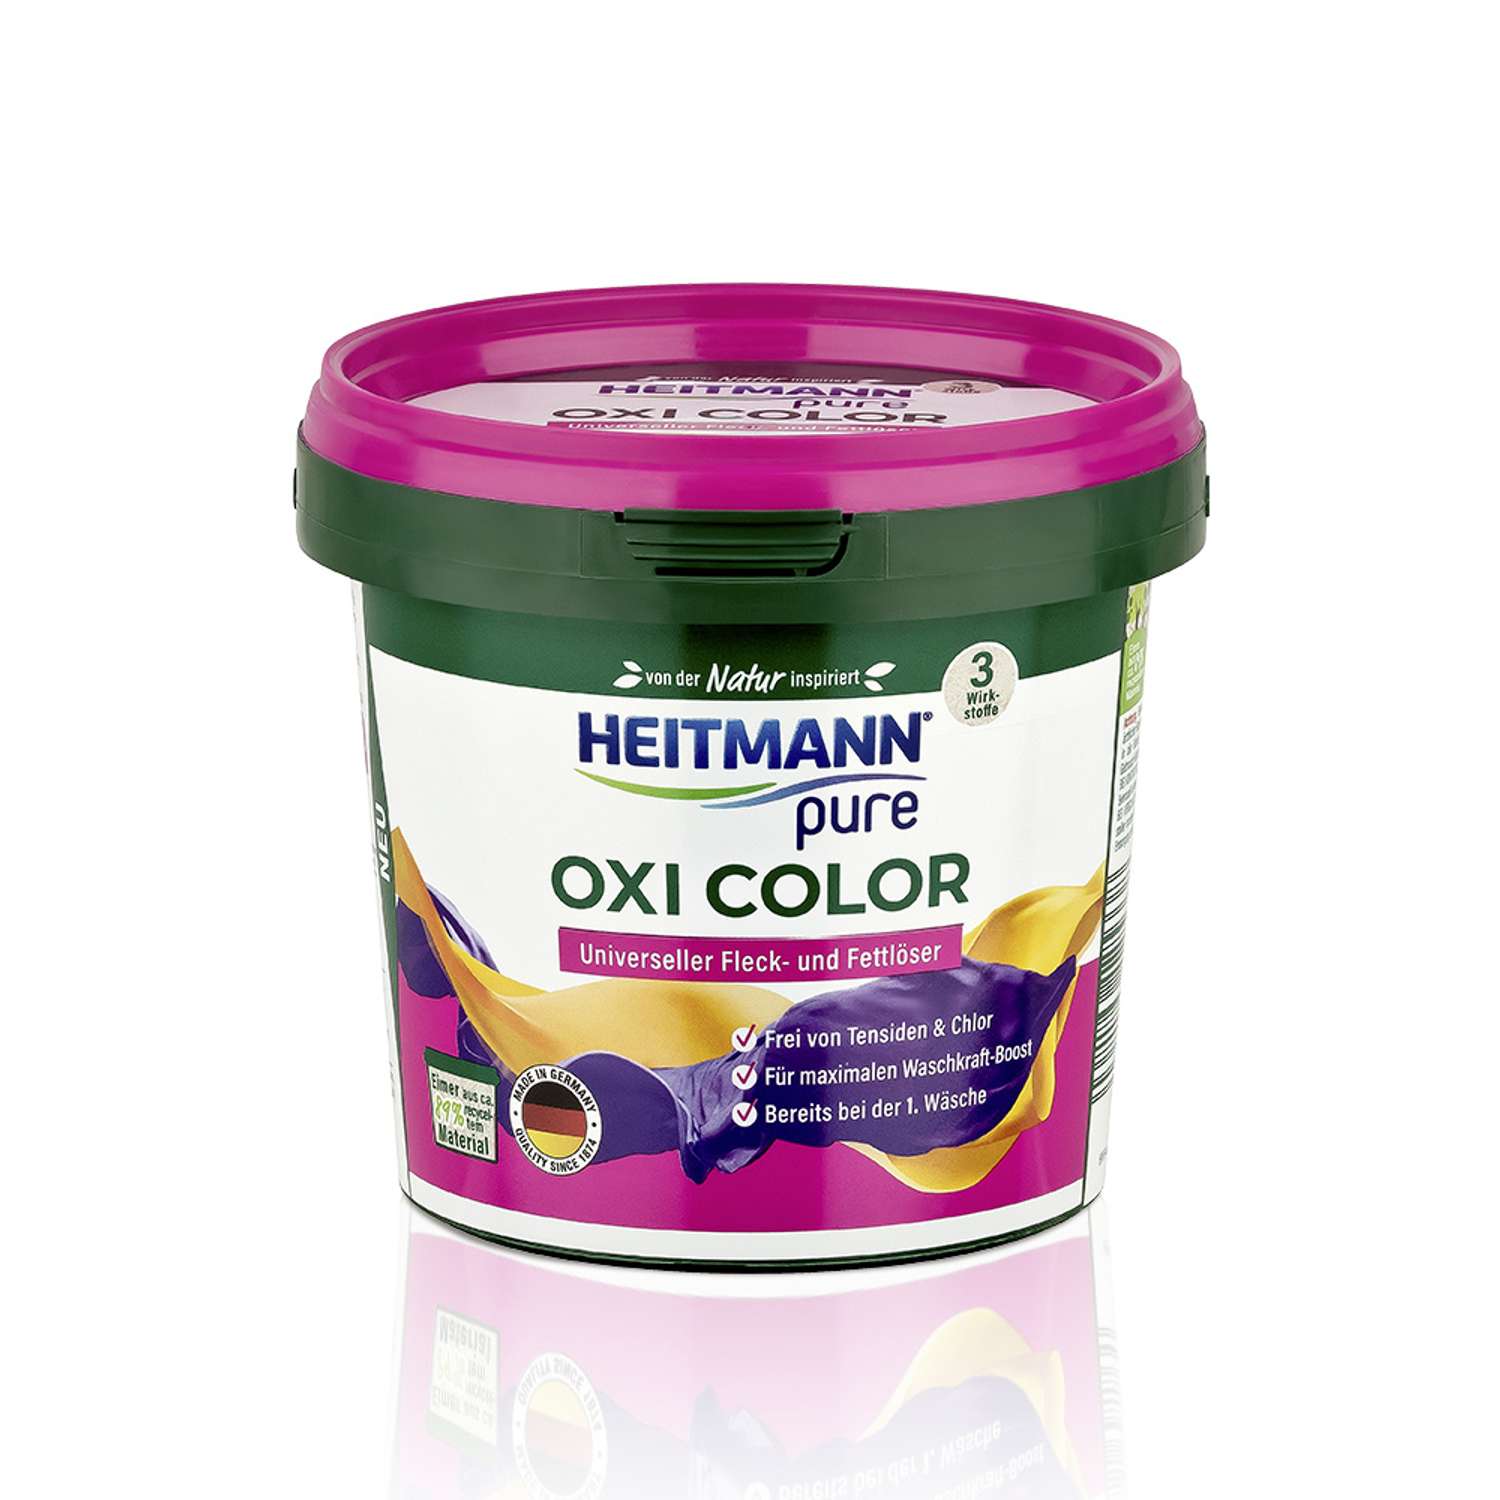 Универсальный пятновыводитель Heitmann Oxi Color 500г - фото 1